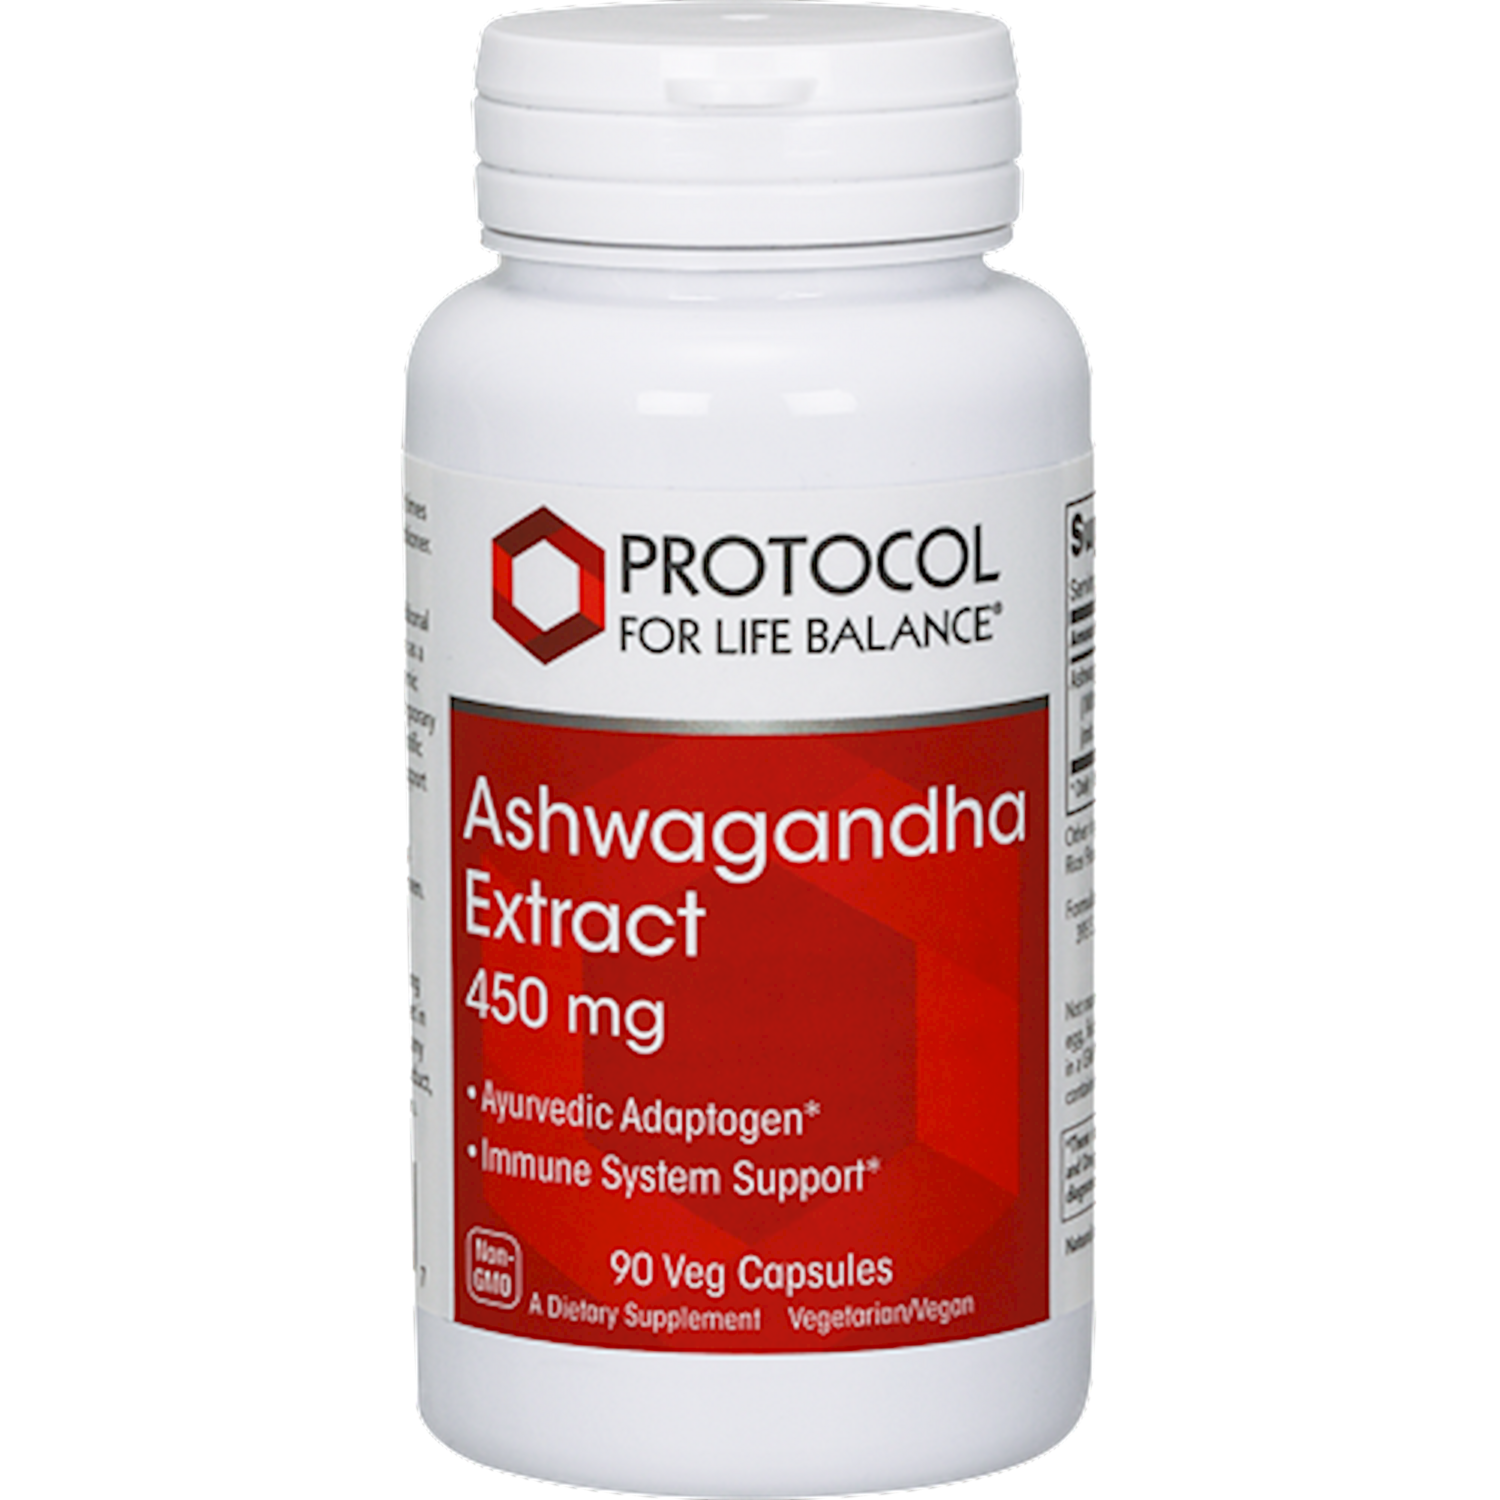 Ashwaganda Extract 450 mg 90 vegcaps Protocol For Life Balance